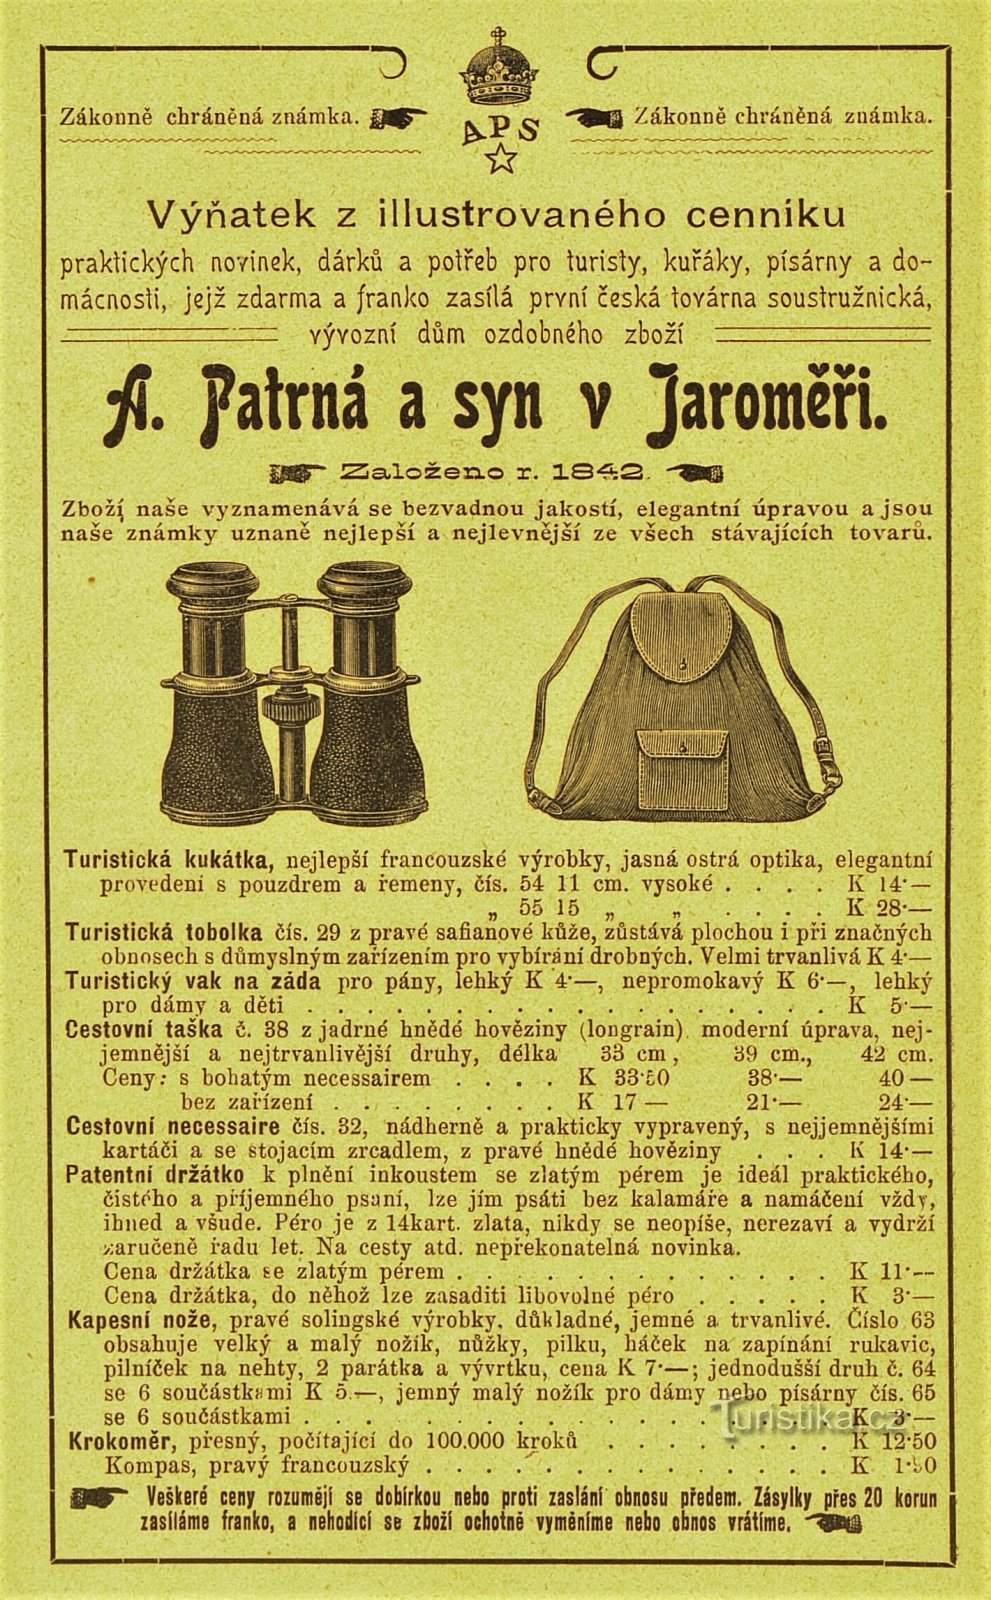 Σύγχρονη διαφήμιση της εταιρείας A. Patrná and son in Jaroměř (1902)